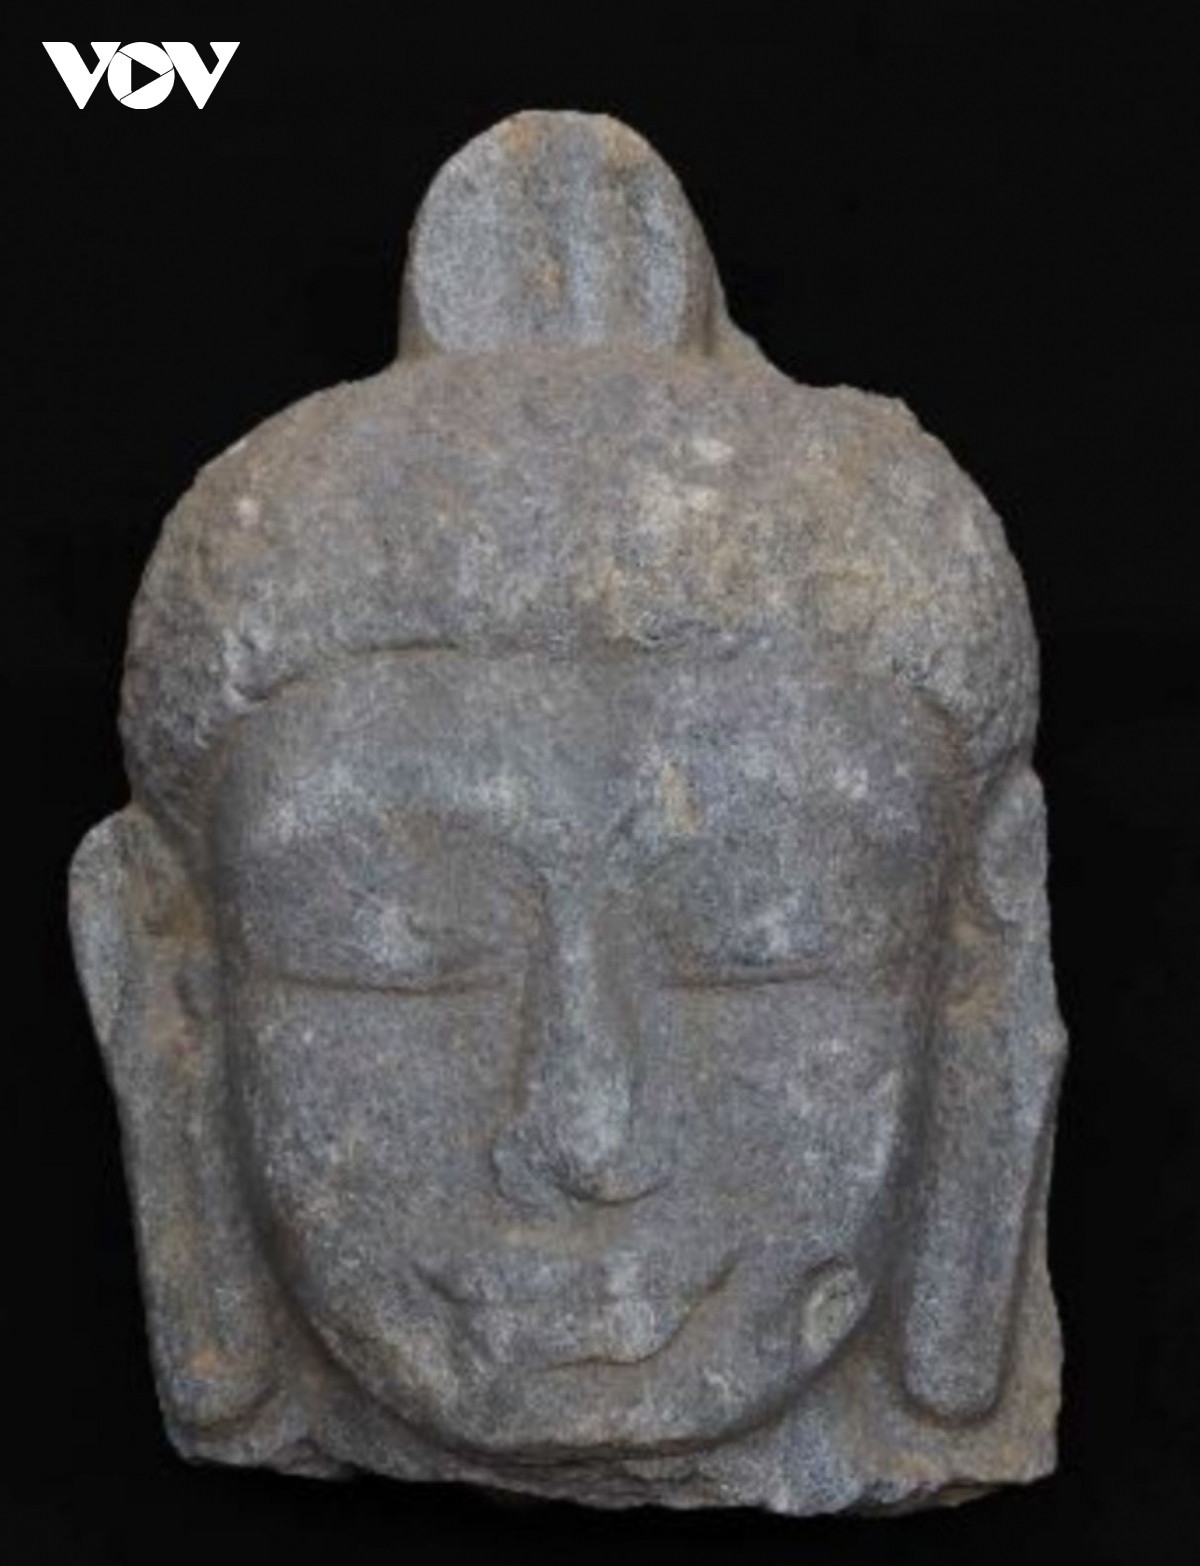 Đầu phù điêu Phật, thế kỷ XI-XII được tìm thấy trong quá trình khảo cổ tháp đôi Liễu Cốc( Ảnh nguồn VOV)